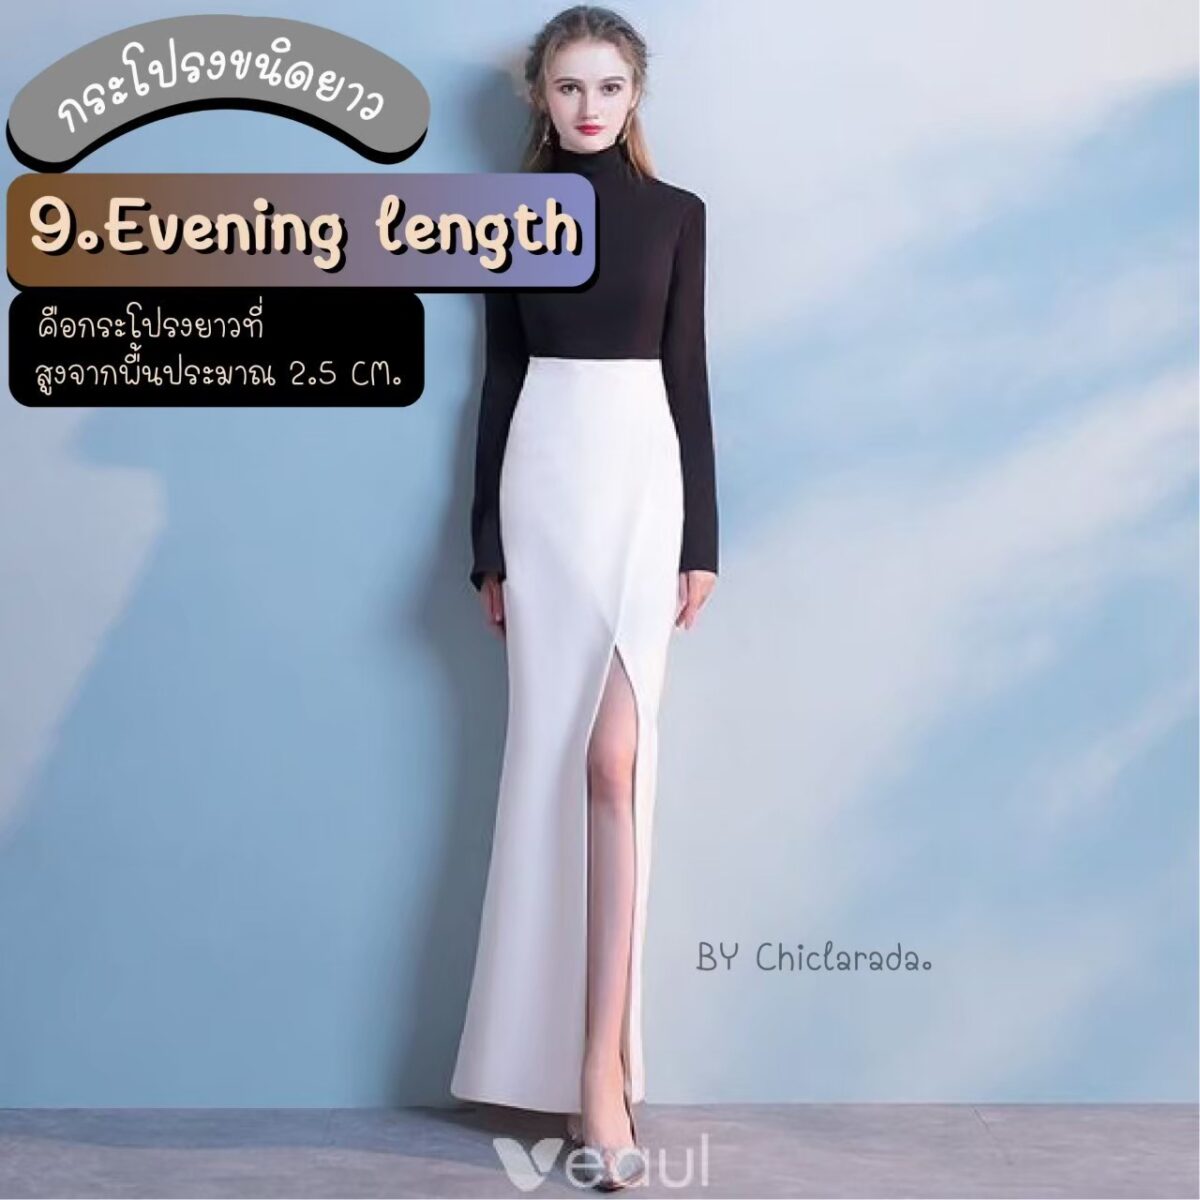 Evening length คือกระโปรงที่ยาวสูงจากพื้นประมาณ 2.5 cm.